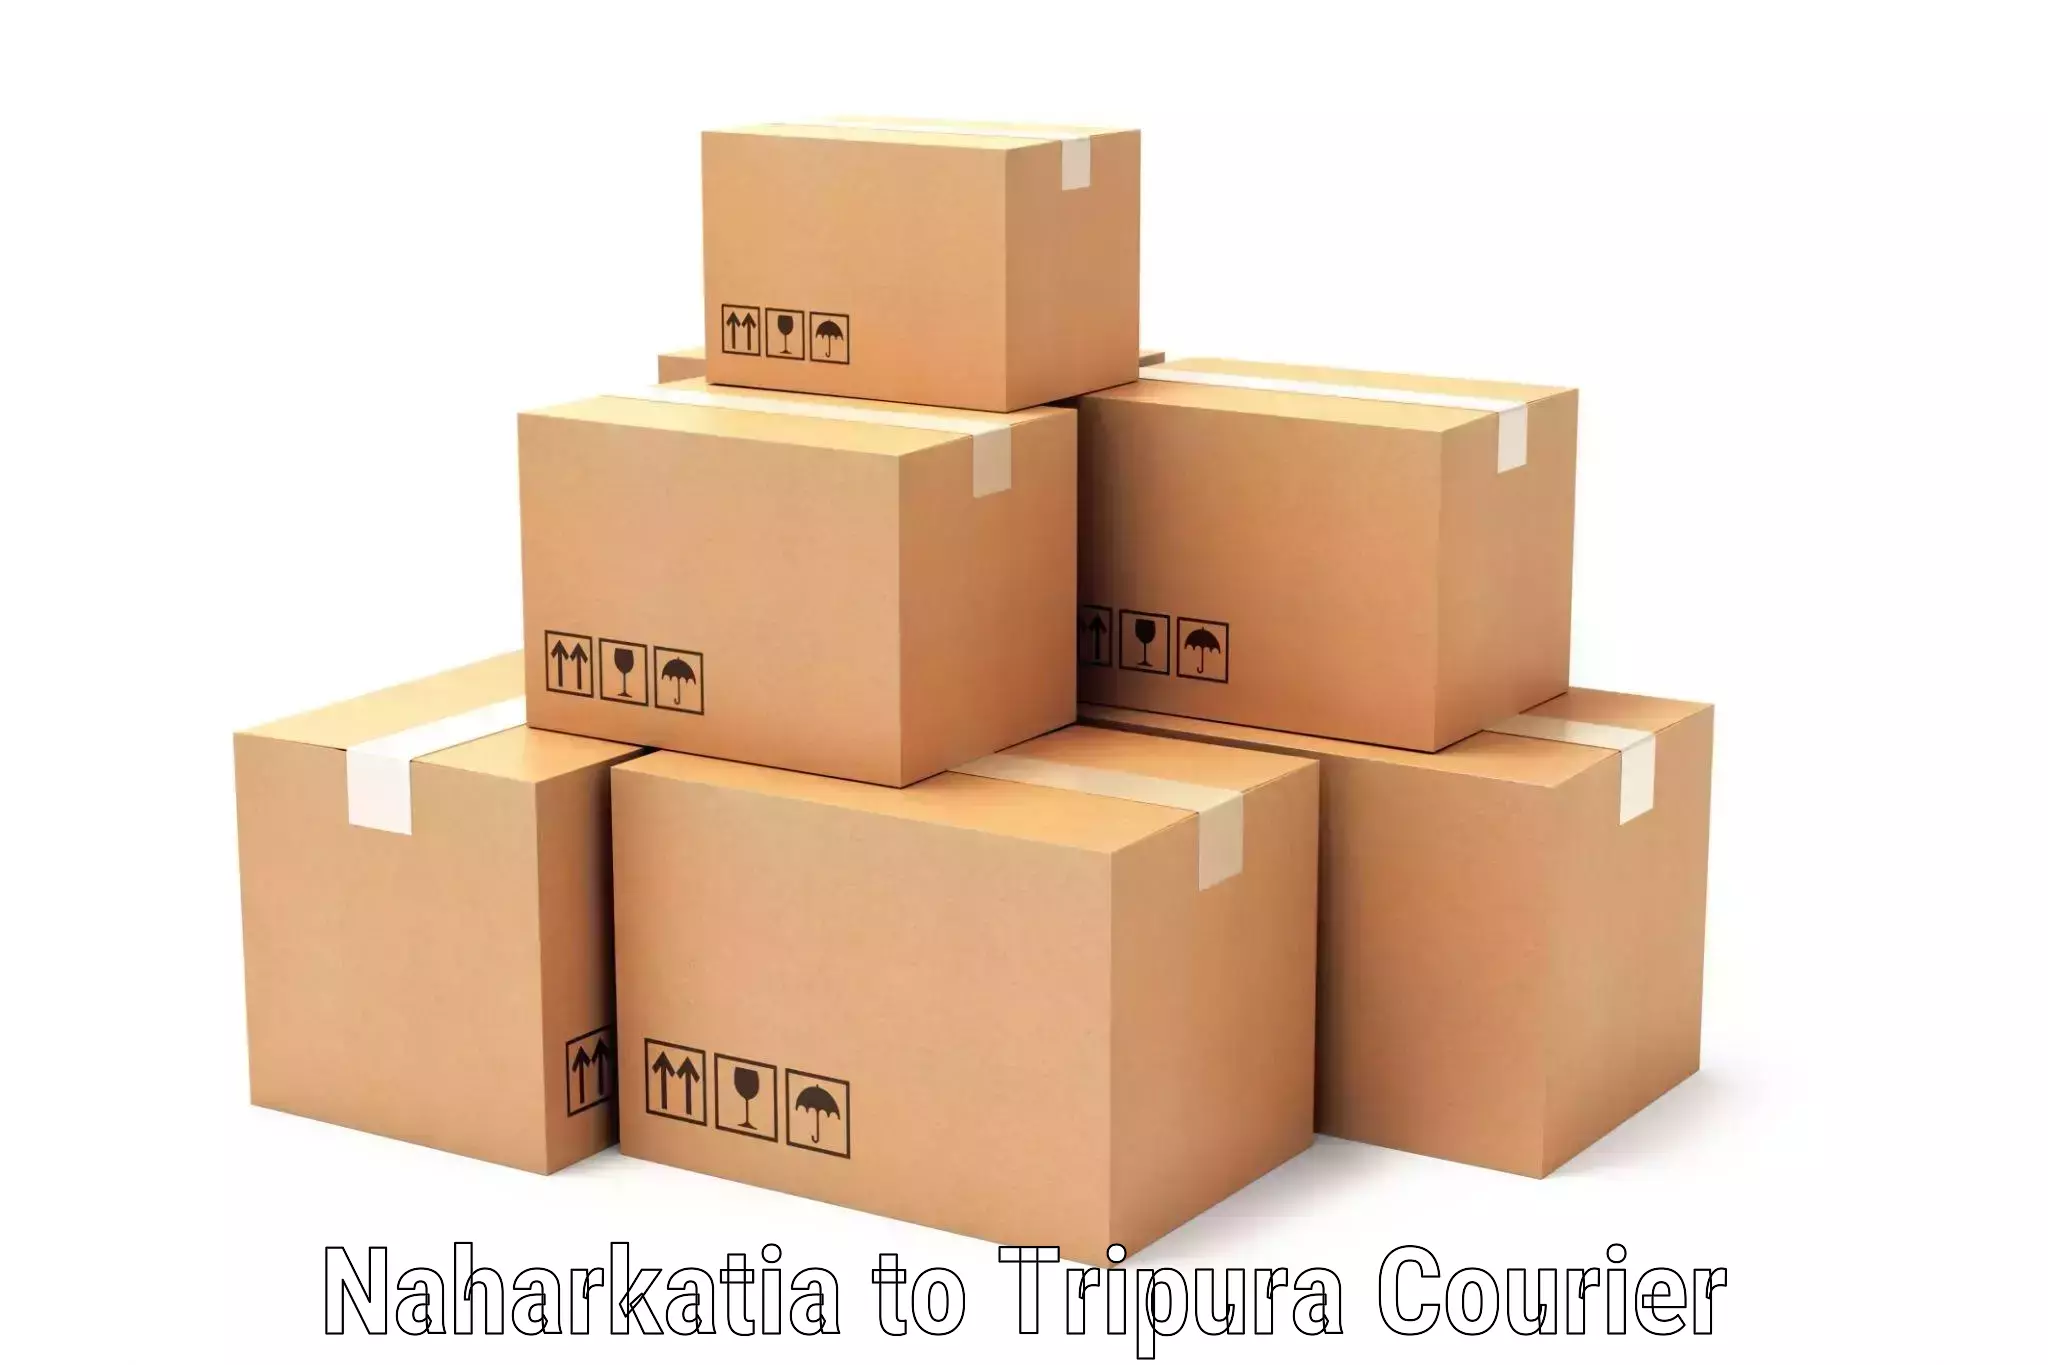 Comprehensive logistics Naharkatia to Aambasa